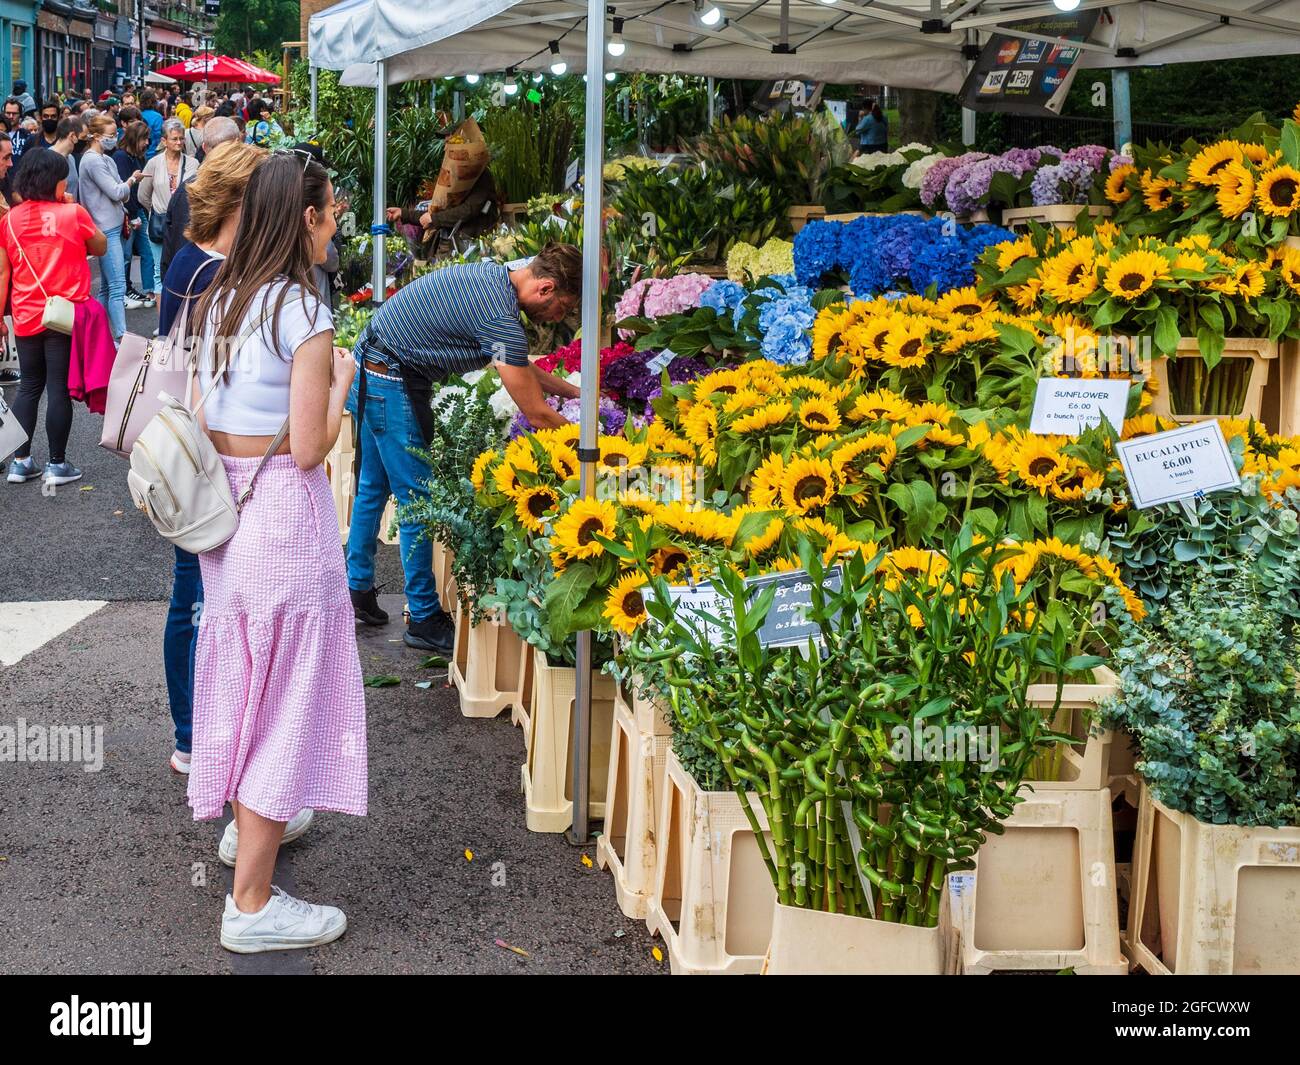 Columbia Road Flower Market - marché du Dimanche très populaire dans la région de East London Banque D'Images